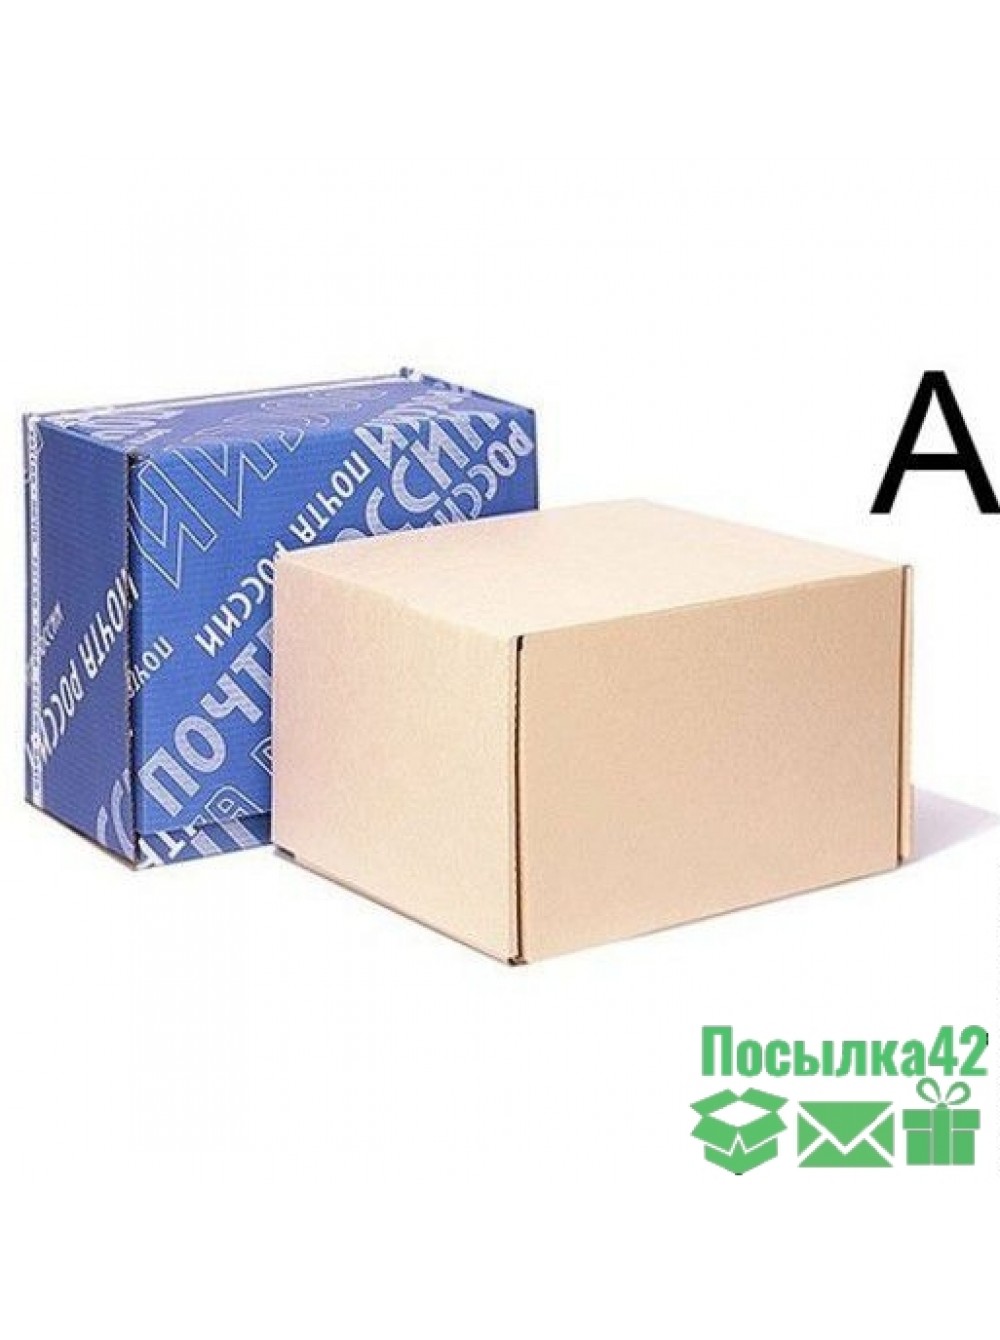 Почтовая коробка Тип а, 425x265x380